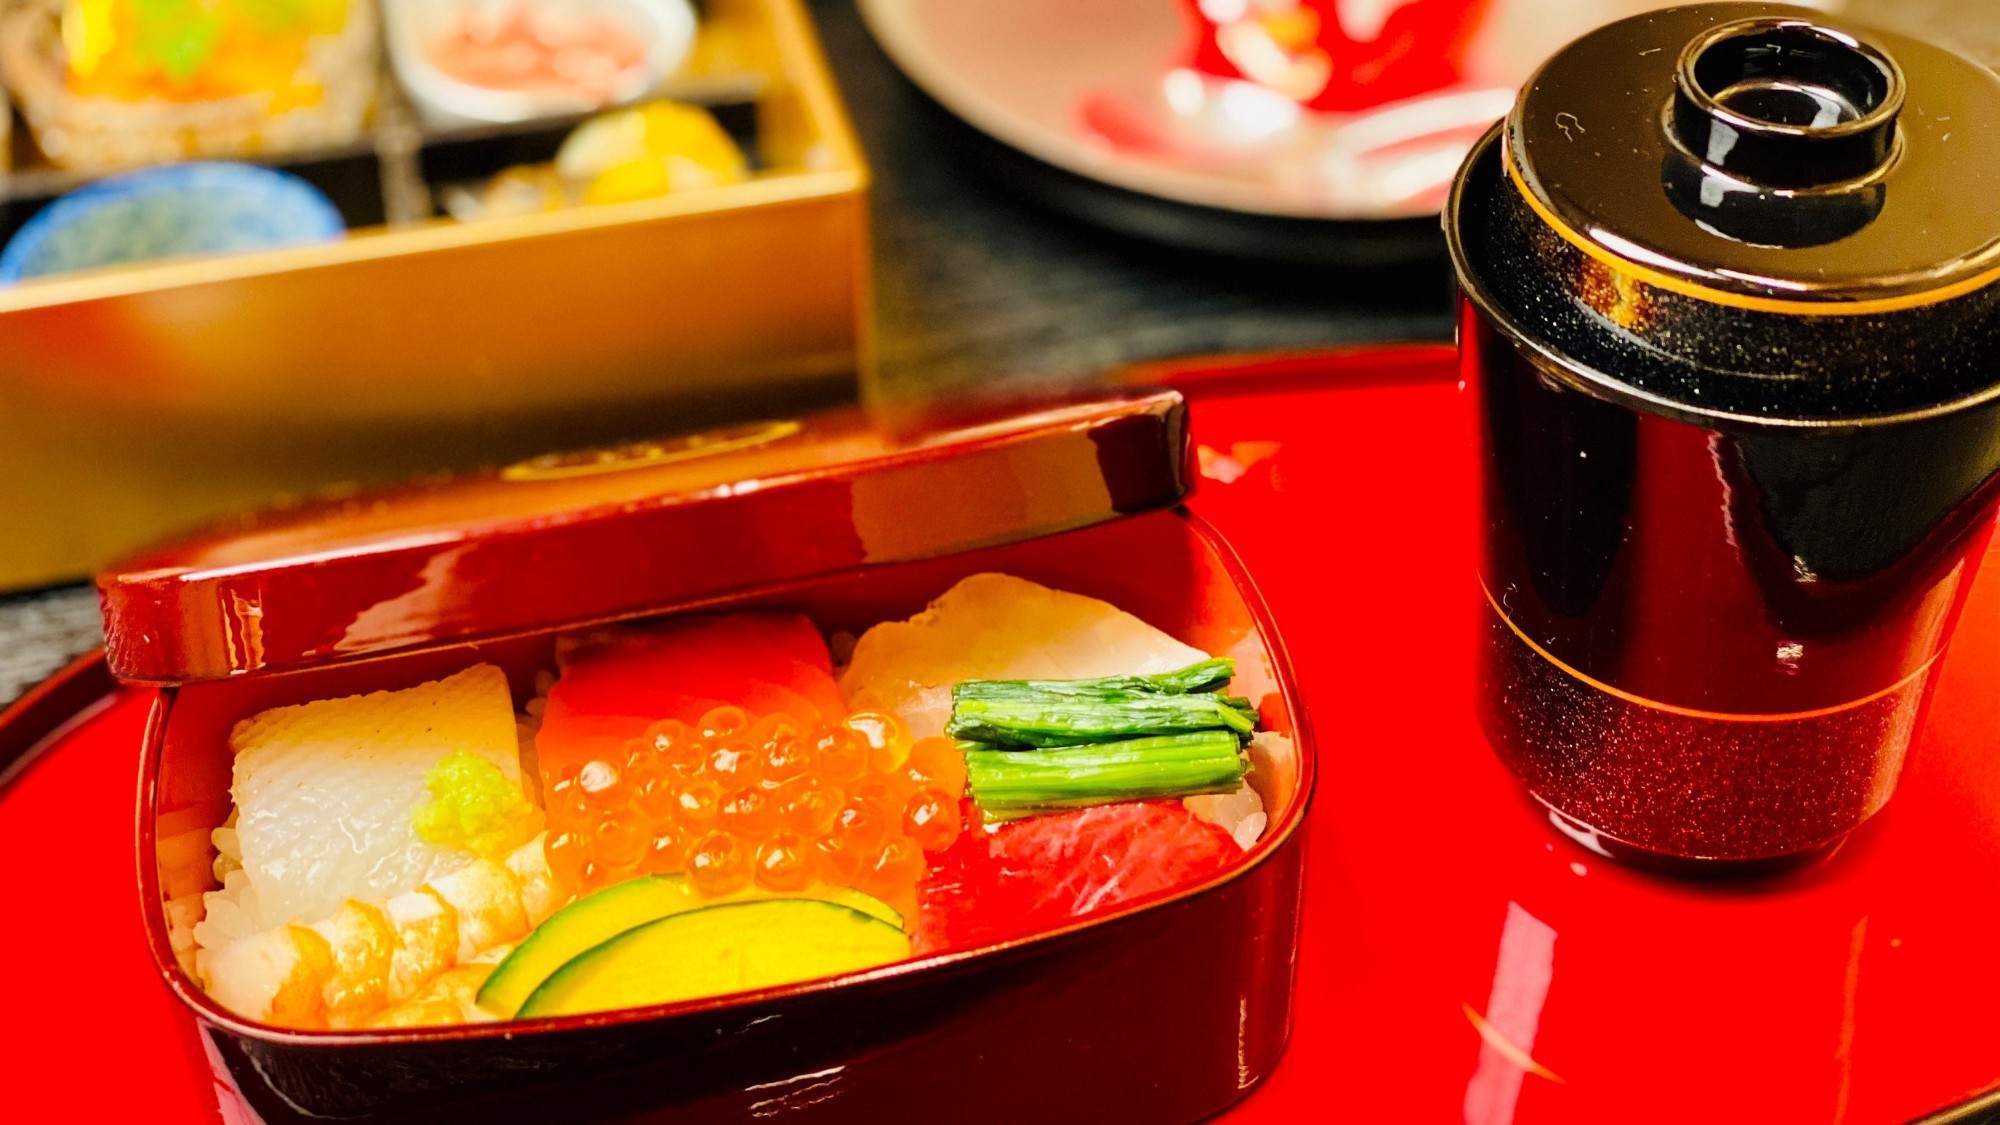 ◆おばんざい料理「桂」・・・彩り寿司